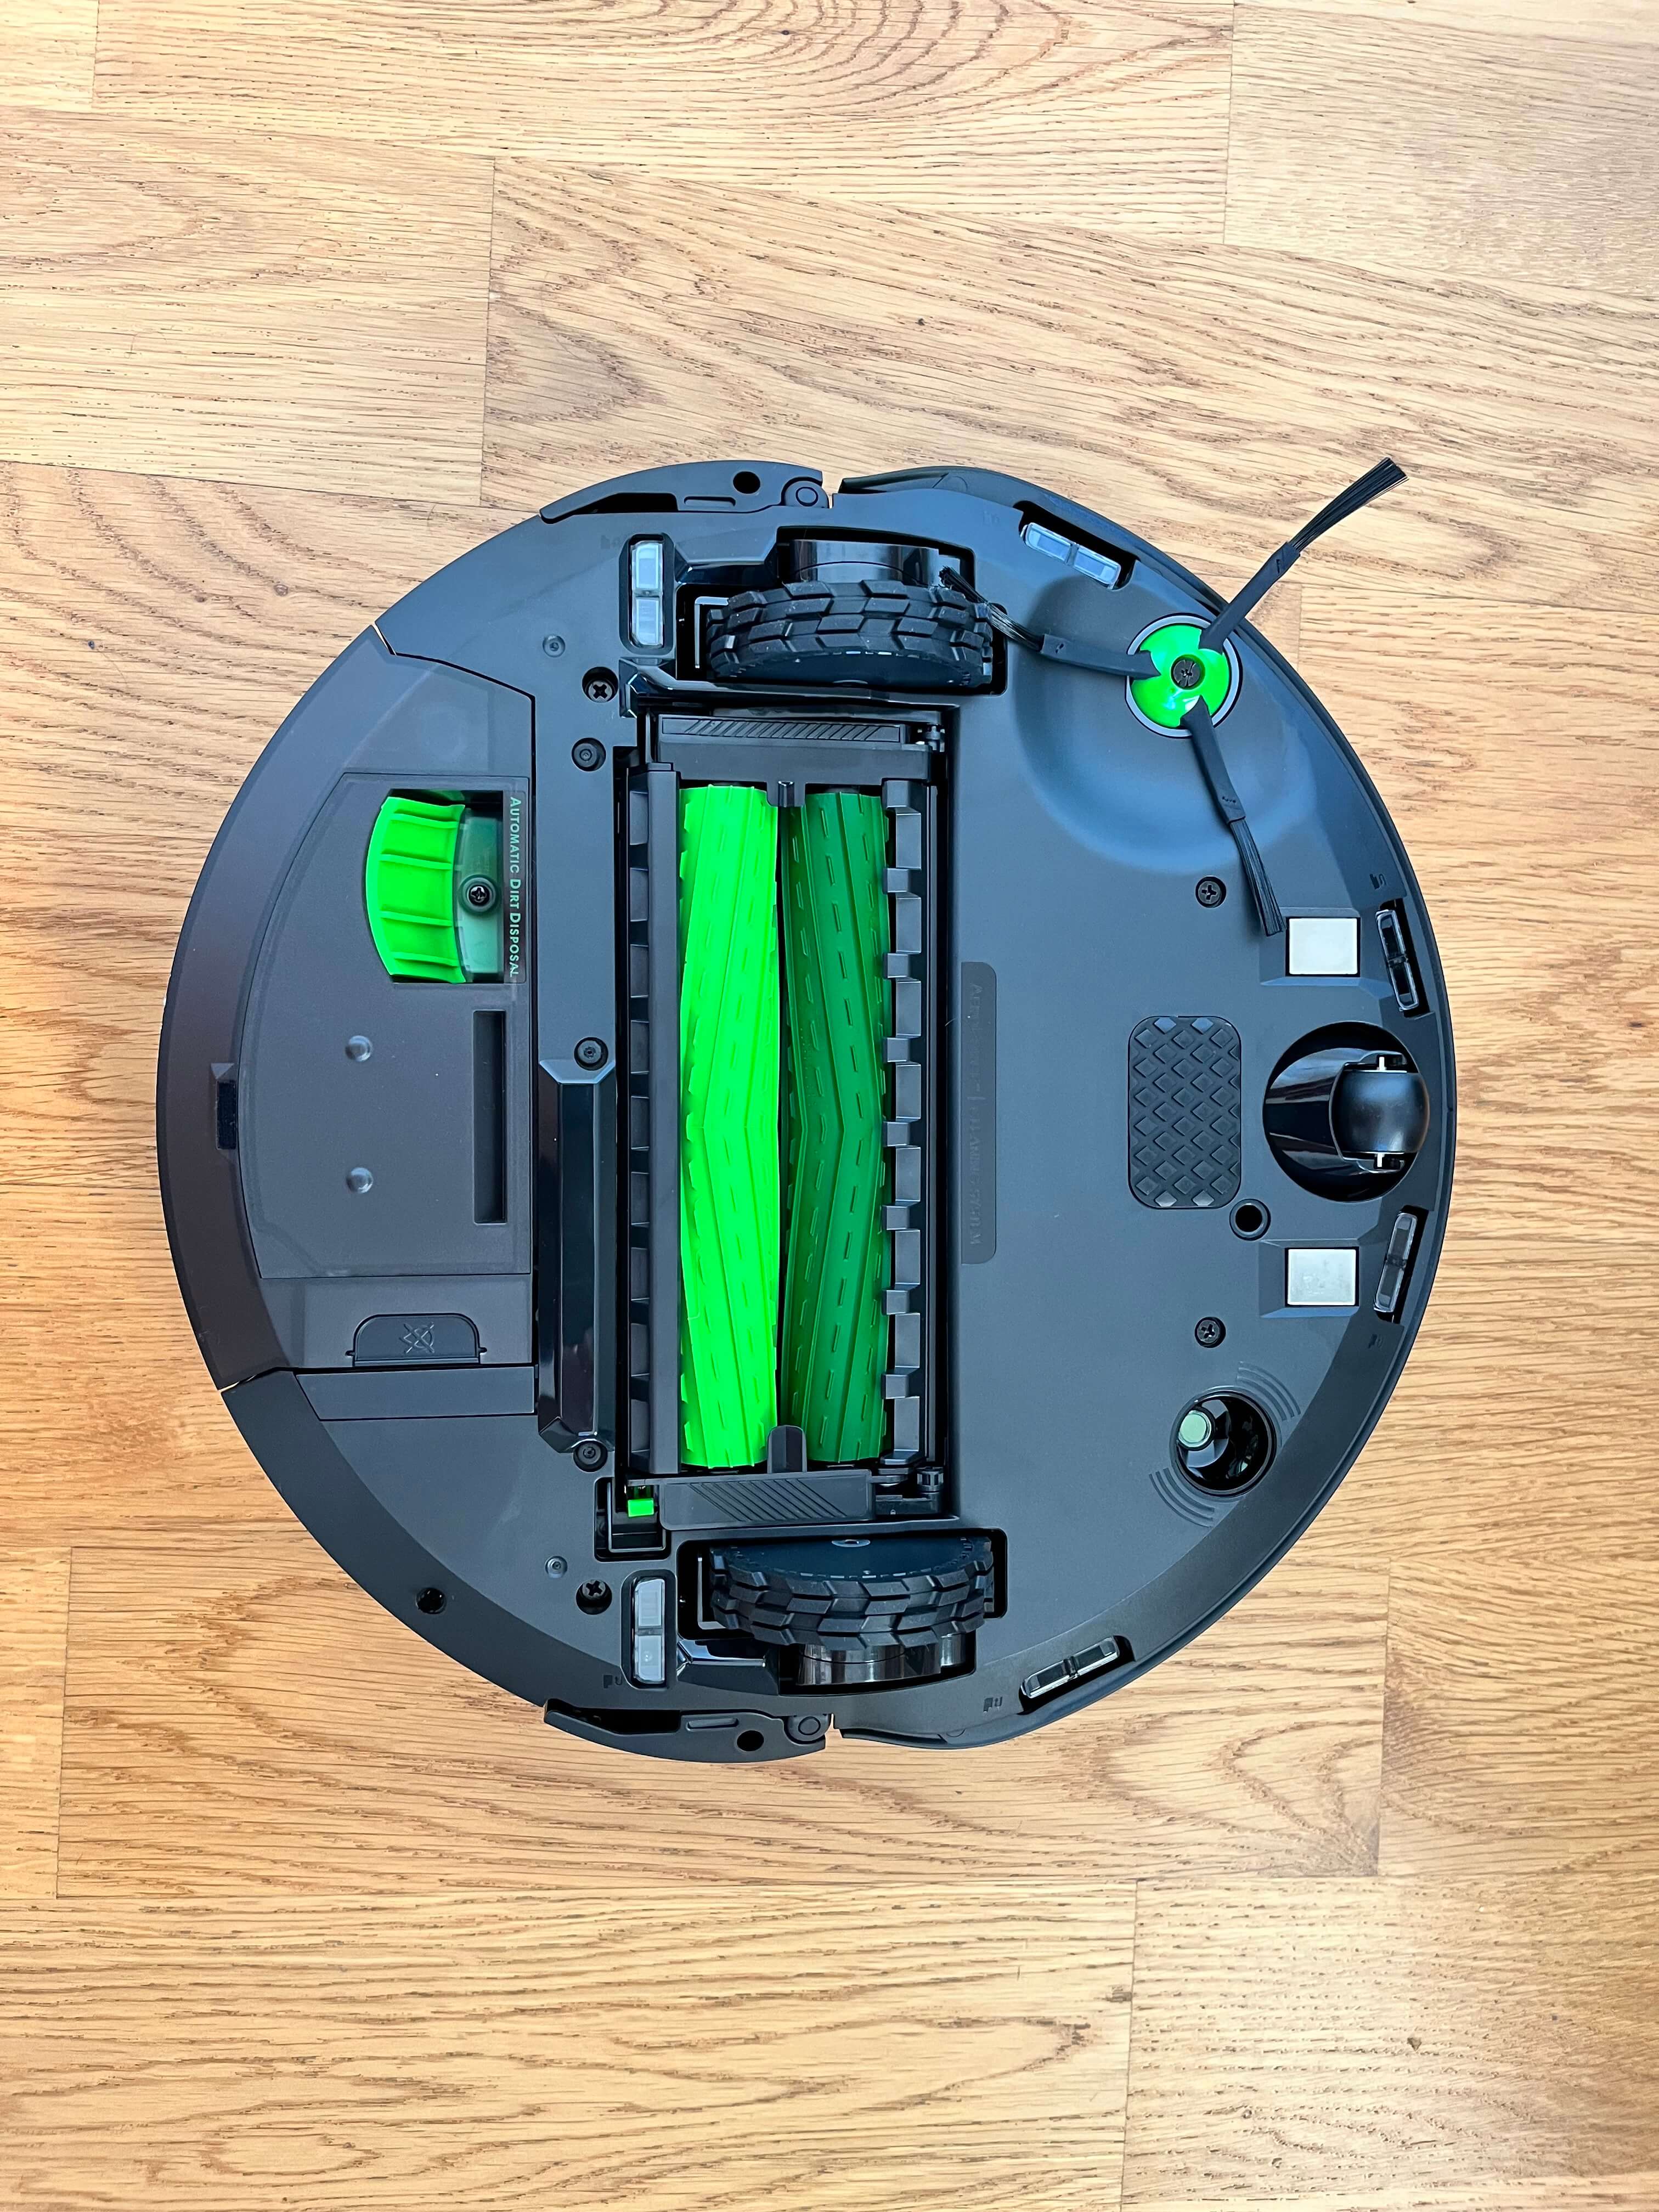 Robot sprzątający Roomba Combo j7+ ma okrągły kształt (a jakżeby inaczej) i wykonany jest z czarnego, matowego plastiku. W okalający go zderzak wbudowano kamerę z lampką LED oraz czujniki ruchu.